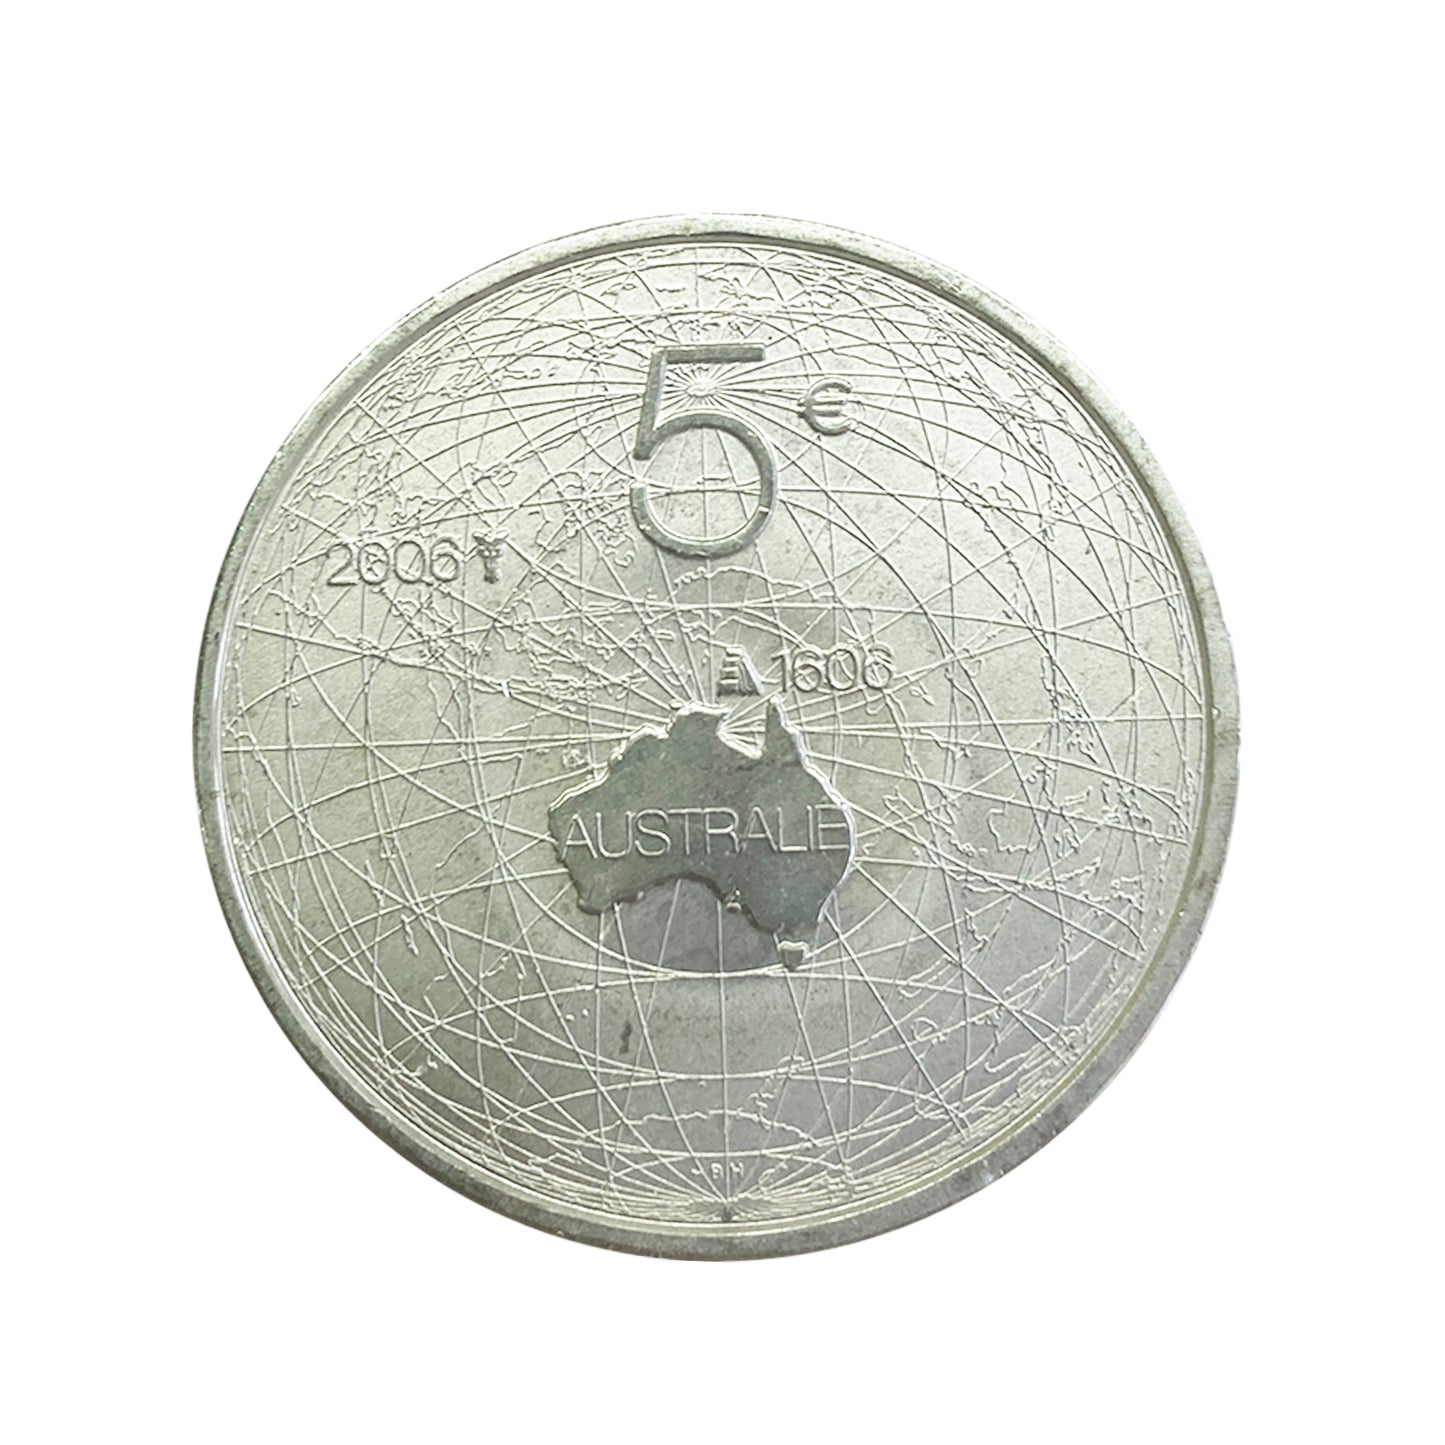 Países Bajos - Moneda 5 euros en plata 2006 - Descubrimiento de Australia